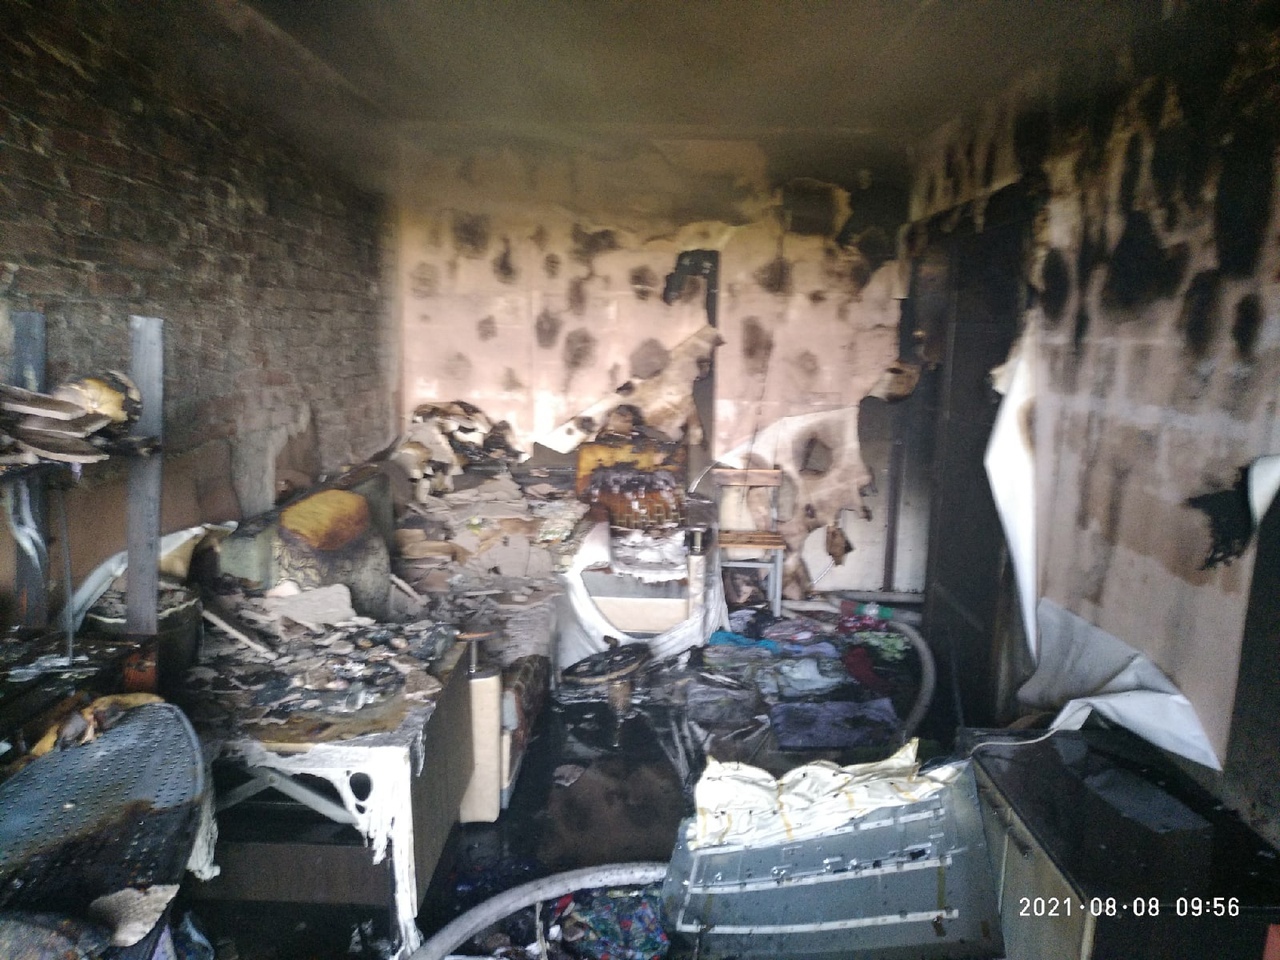 Квартира, в которой начался пожар, выгорела полностью